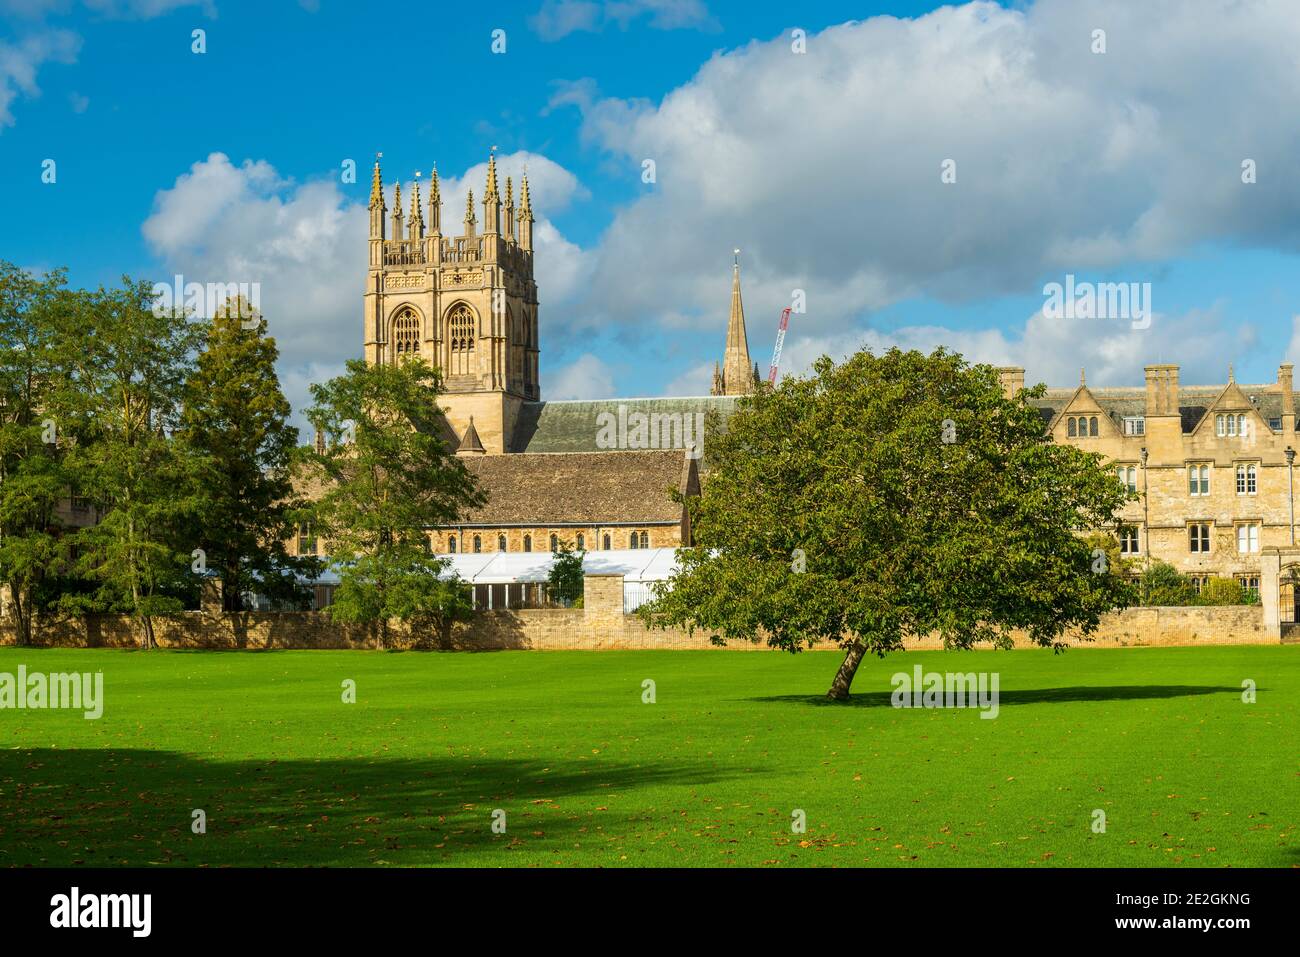 Merton College, Oxford; part of Oxford University, England. Stock Photo